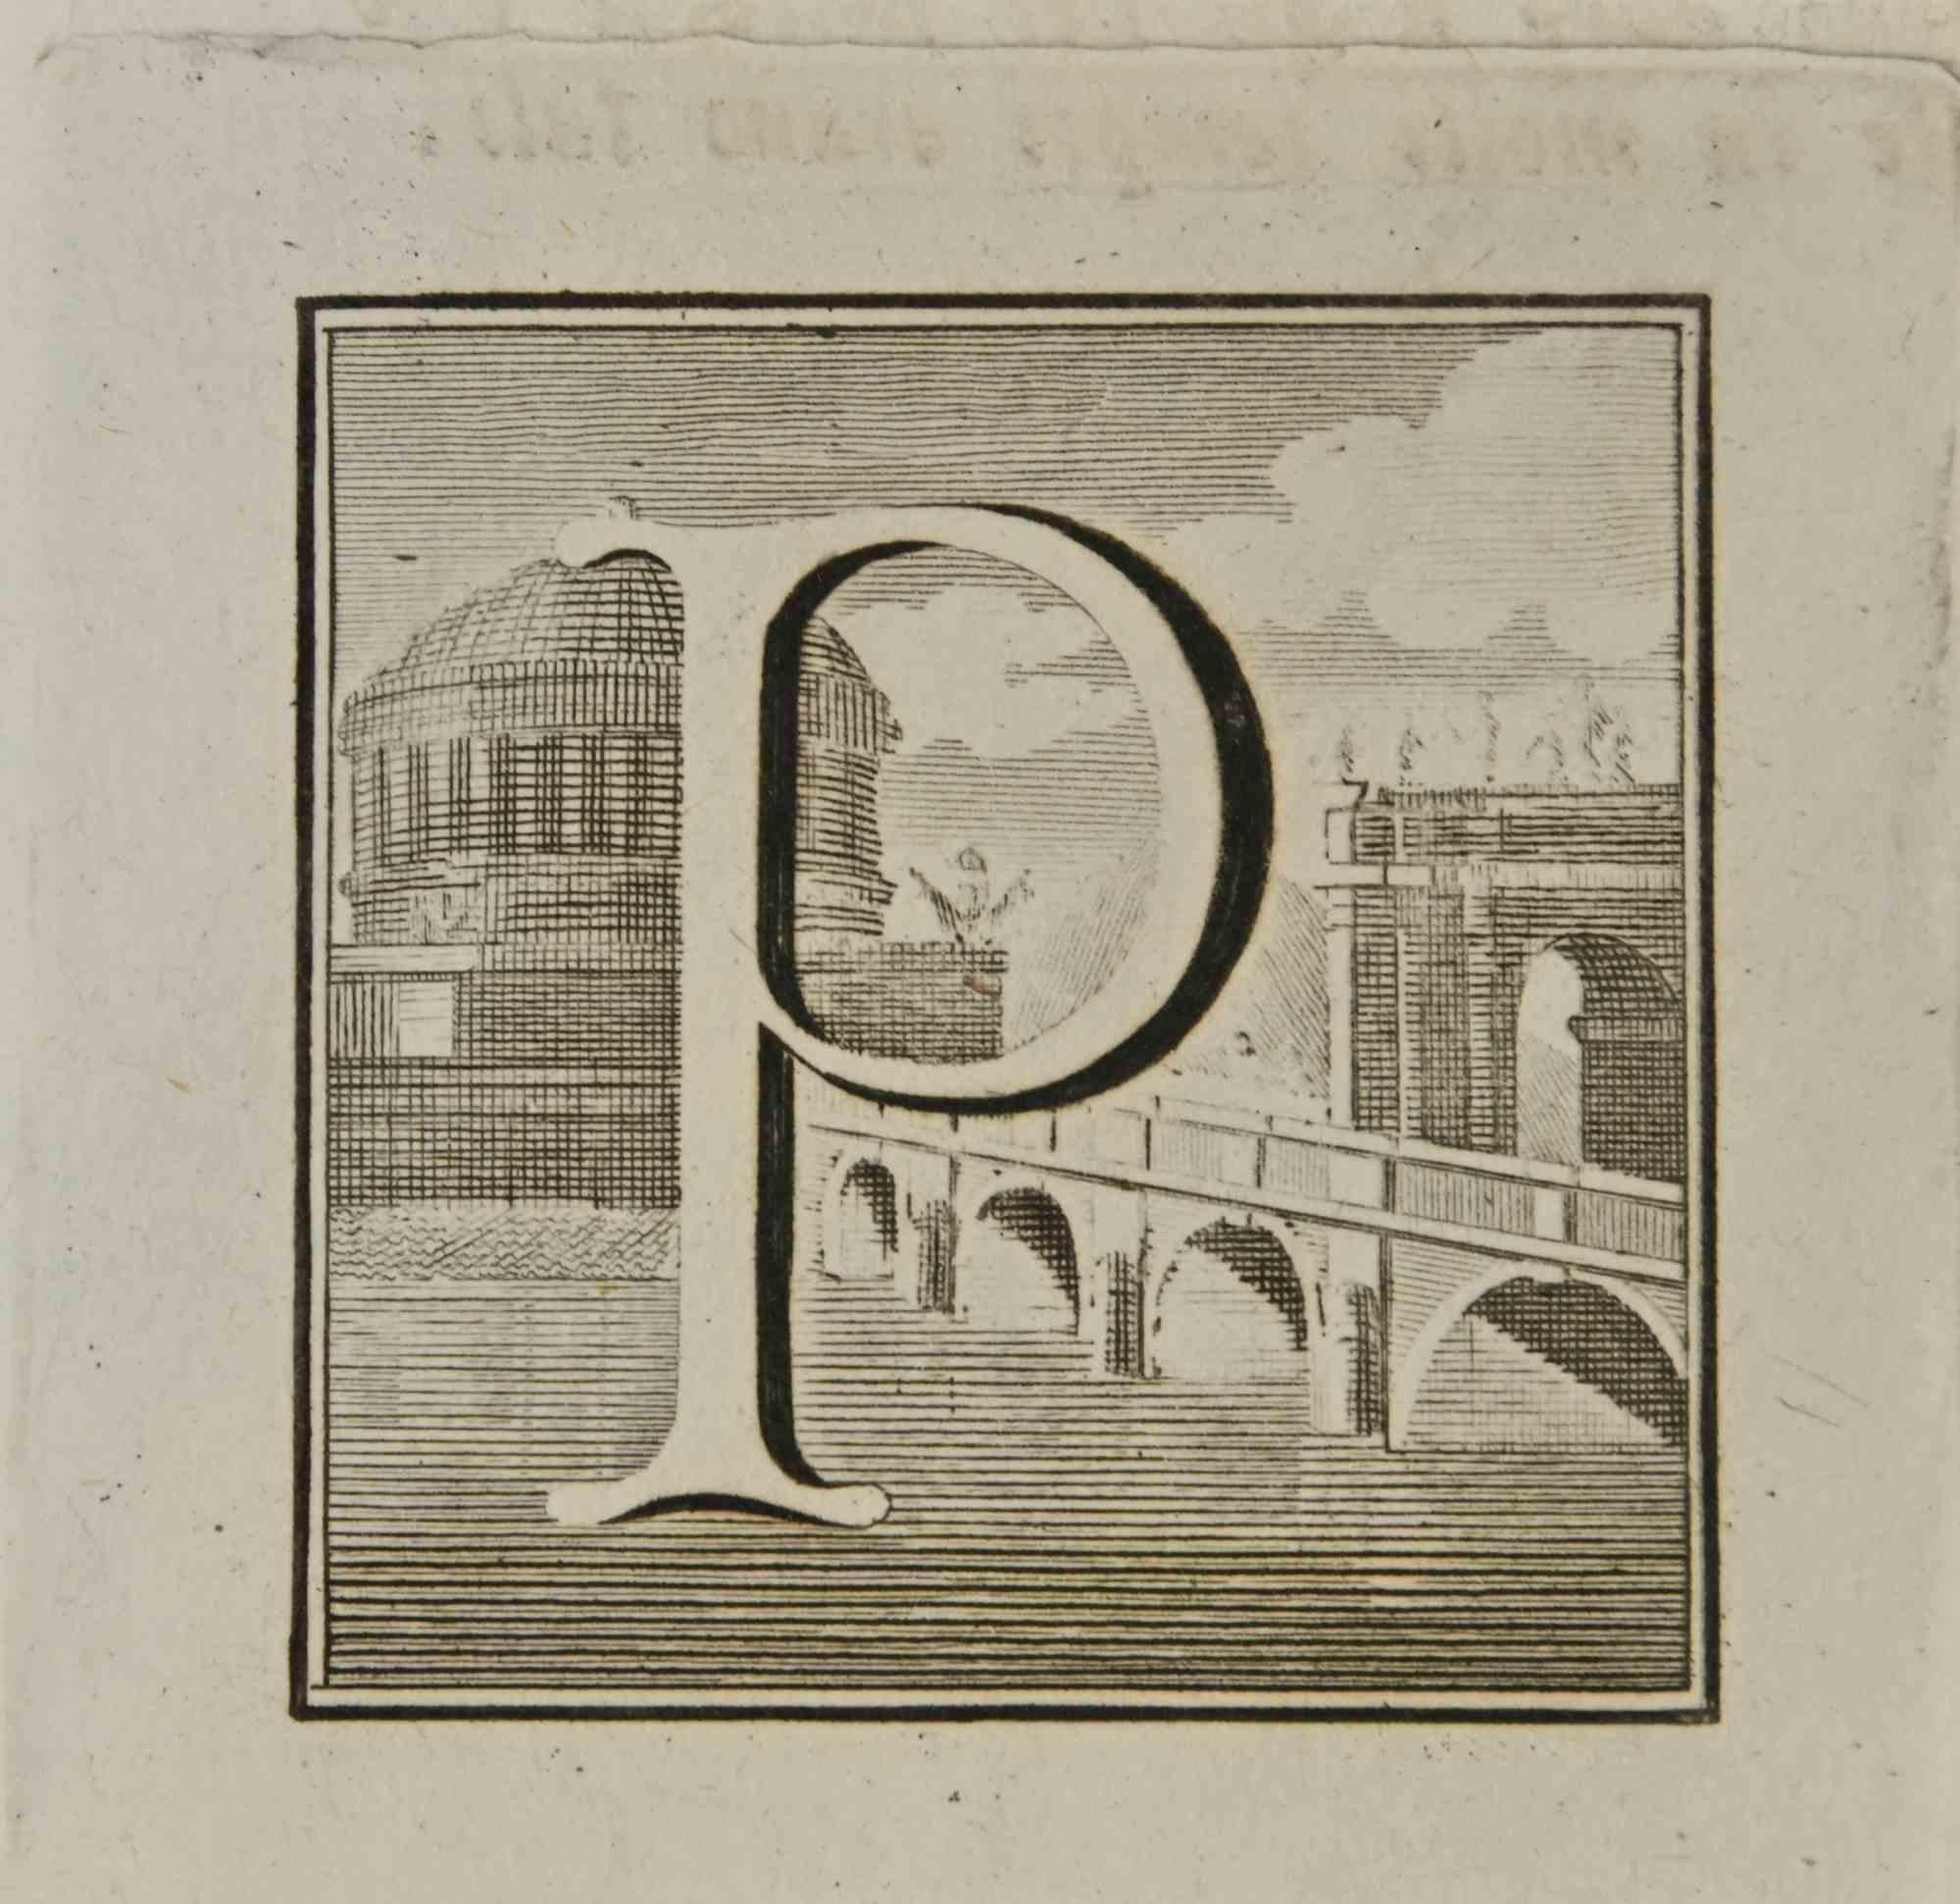 Lettre de l'alphabet P,  de la série "Antiquités d'Herculanum", est une gravure sur papier réalisée par Luigi Vanvitelli au 18ème siècle.

Bonnes conditions.

La gravure appartient à la suite d'estampes "Antiquités d'Herculanum exposées" (titre